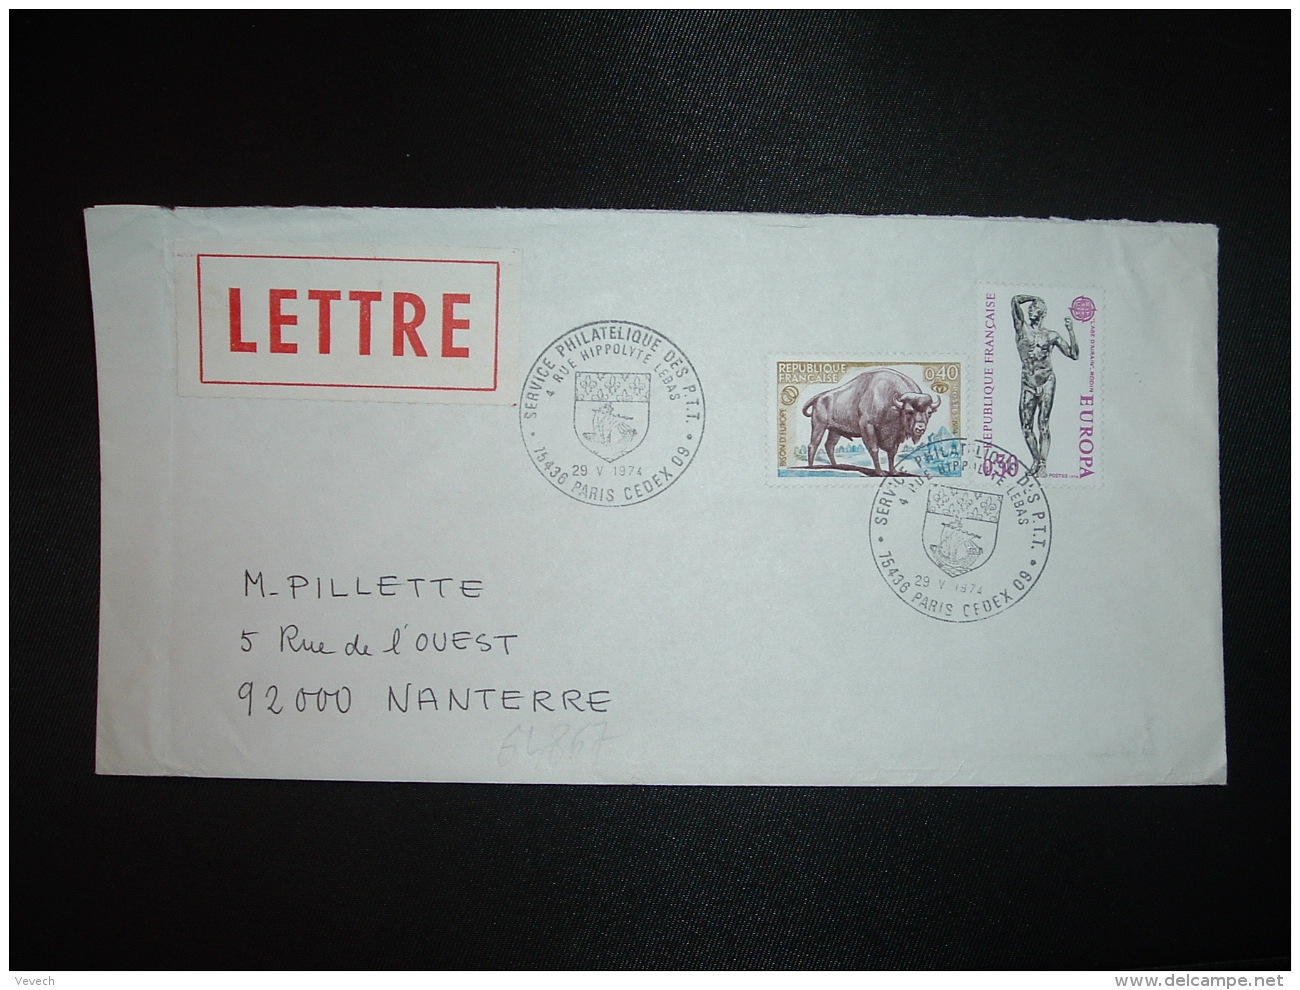 LETTRE TP EUROPA 0,50 + BISON D'EUROPE 0,40 OBL.29 V 1974 PARIS CEDEX 09 SERVICE PHILATELIQUE DES PTT - Posttarife